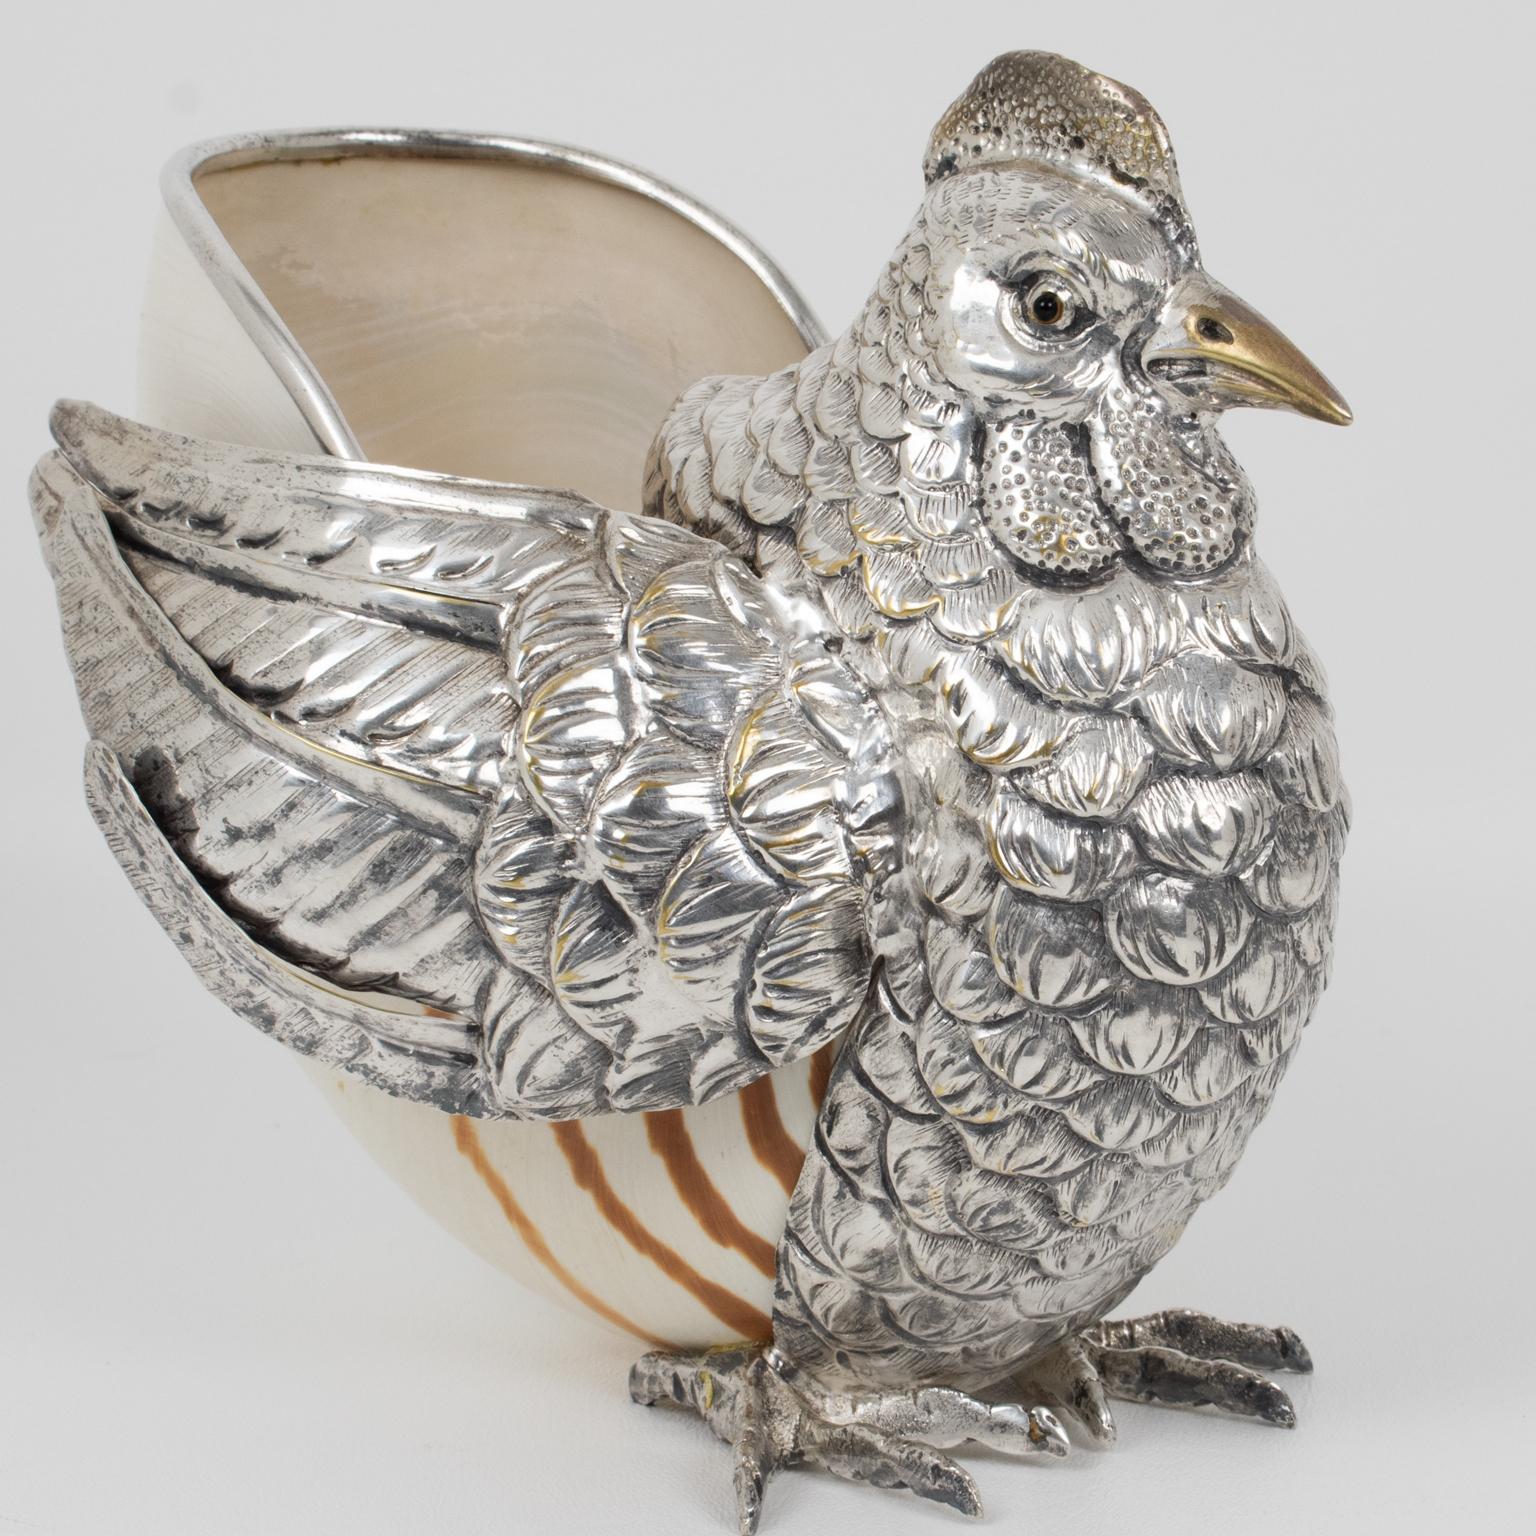 Dieser wunderschöne Vogel aus massivem Silberblech und Muscheln wurde von der italienischen Künstlerin Gabriella Binazzi entworfen und handgefertigt (zugeschrieben). Bei diesem schönen Kunstobjekt von Binazzi kann man das Meer hören. Der Kopf, das